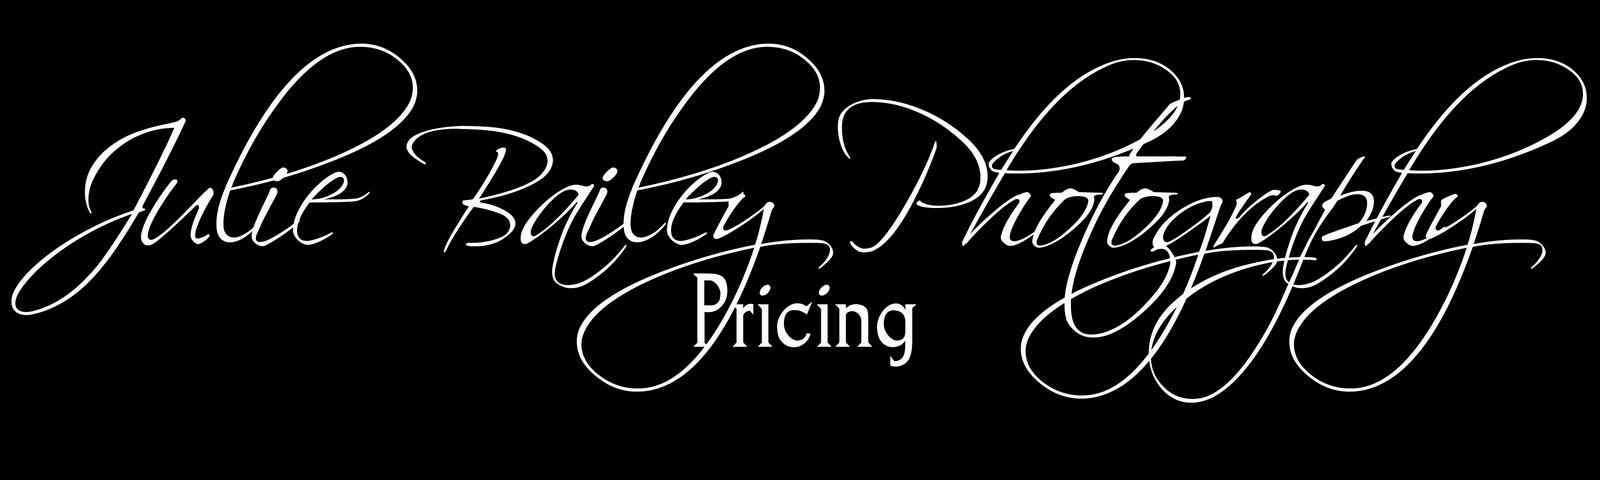 Pricing Blog